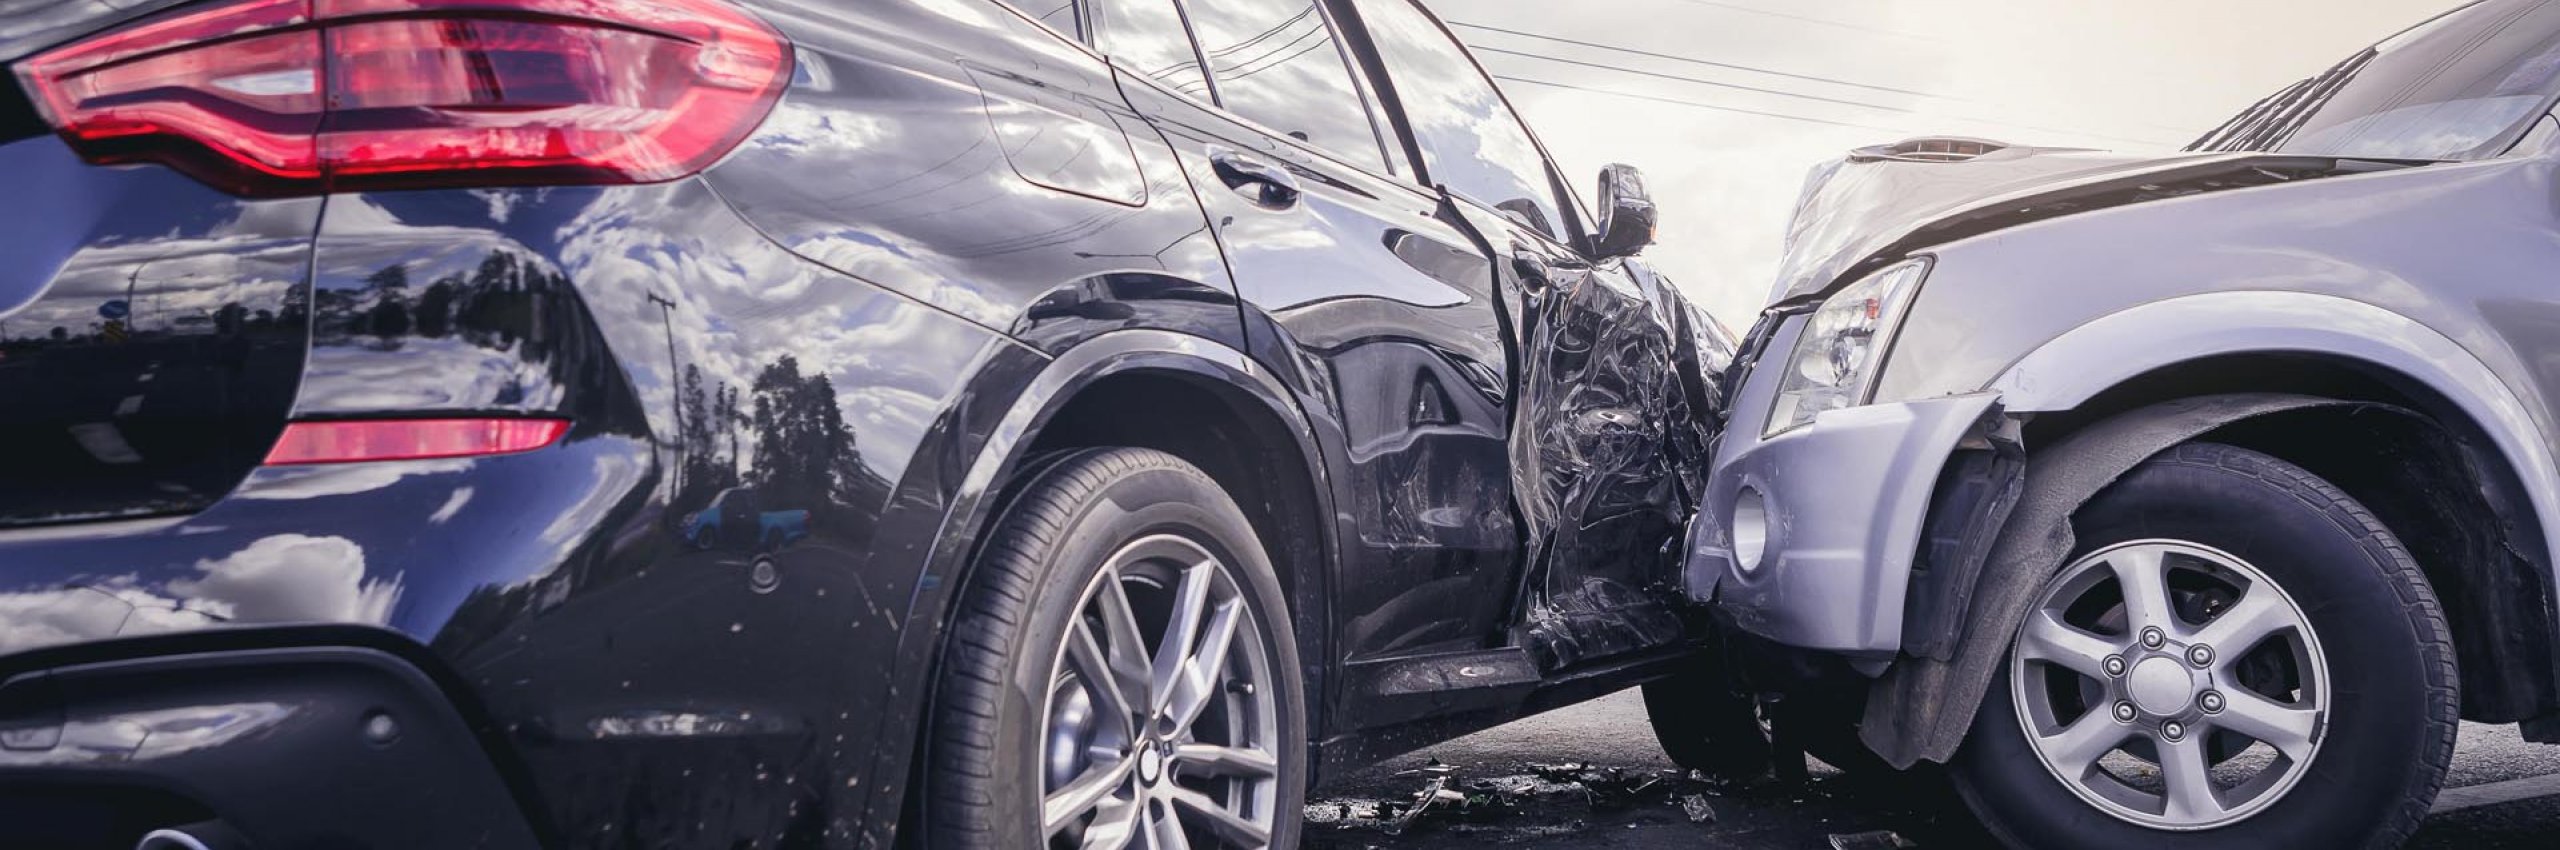 BRW | Privatlösung | KFZ Versicherung | Ein Autounfall